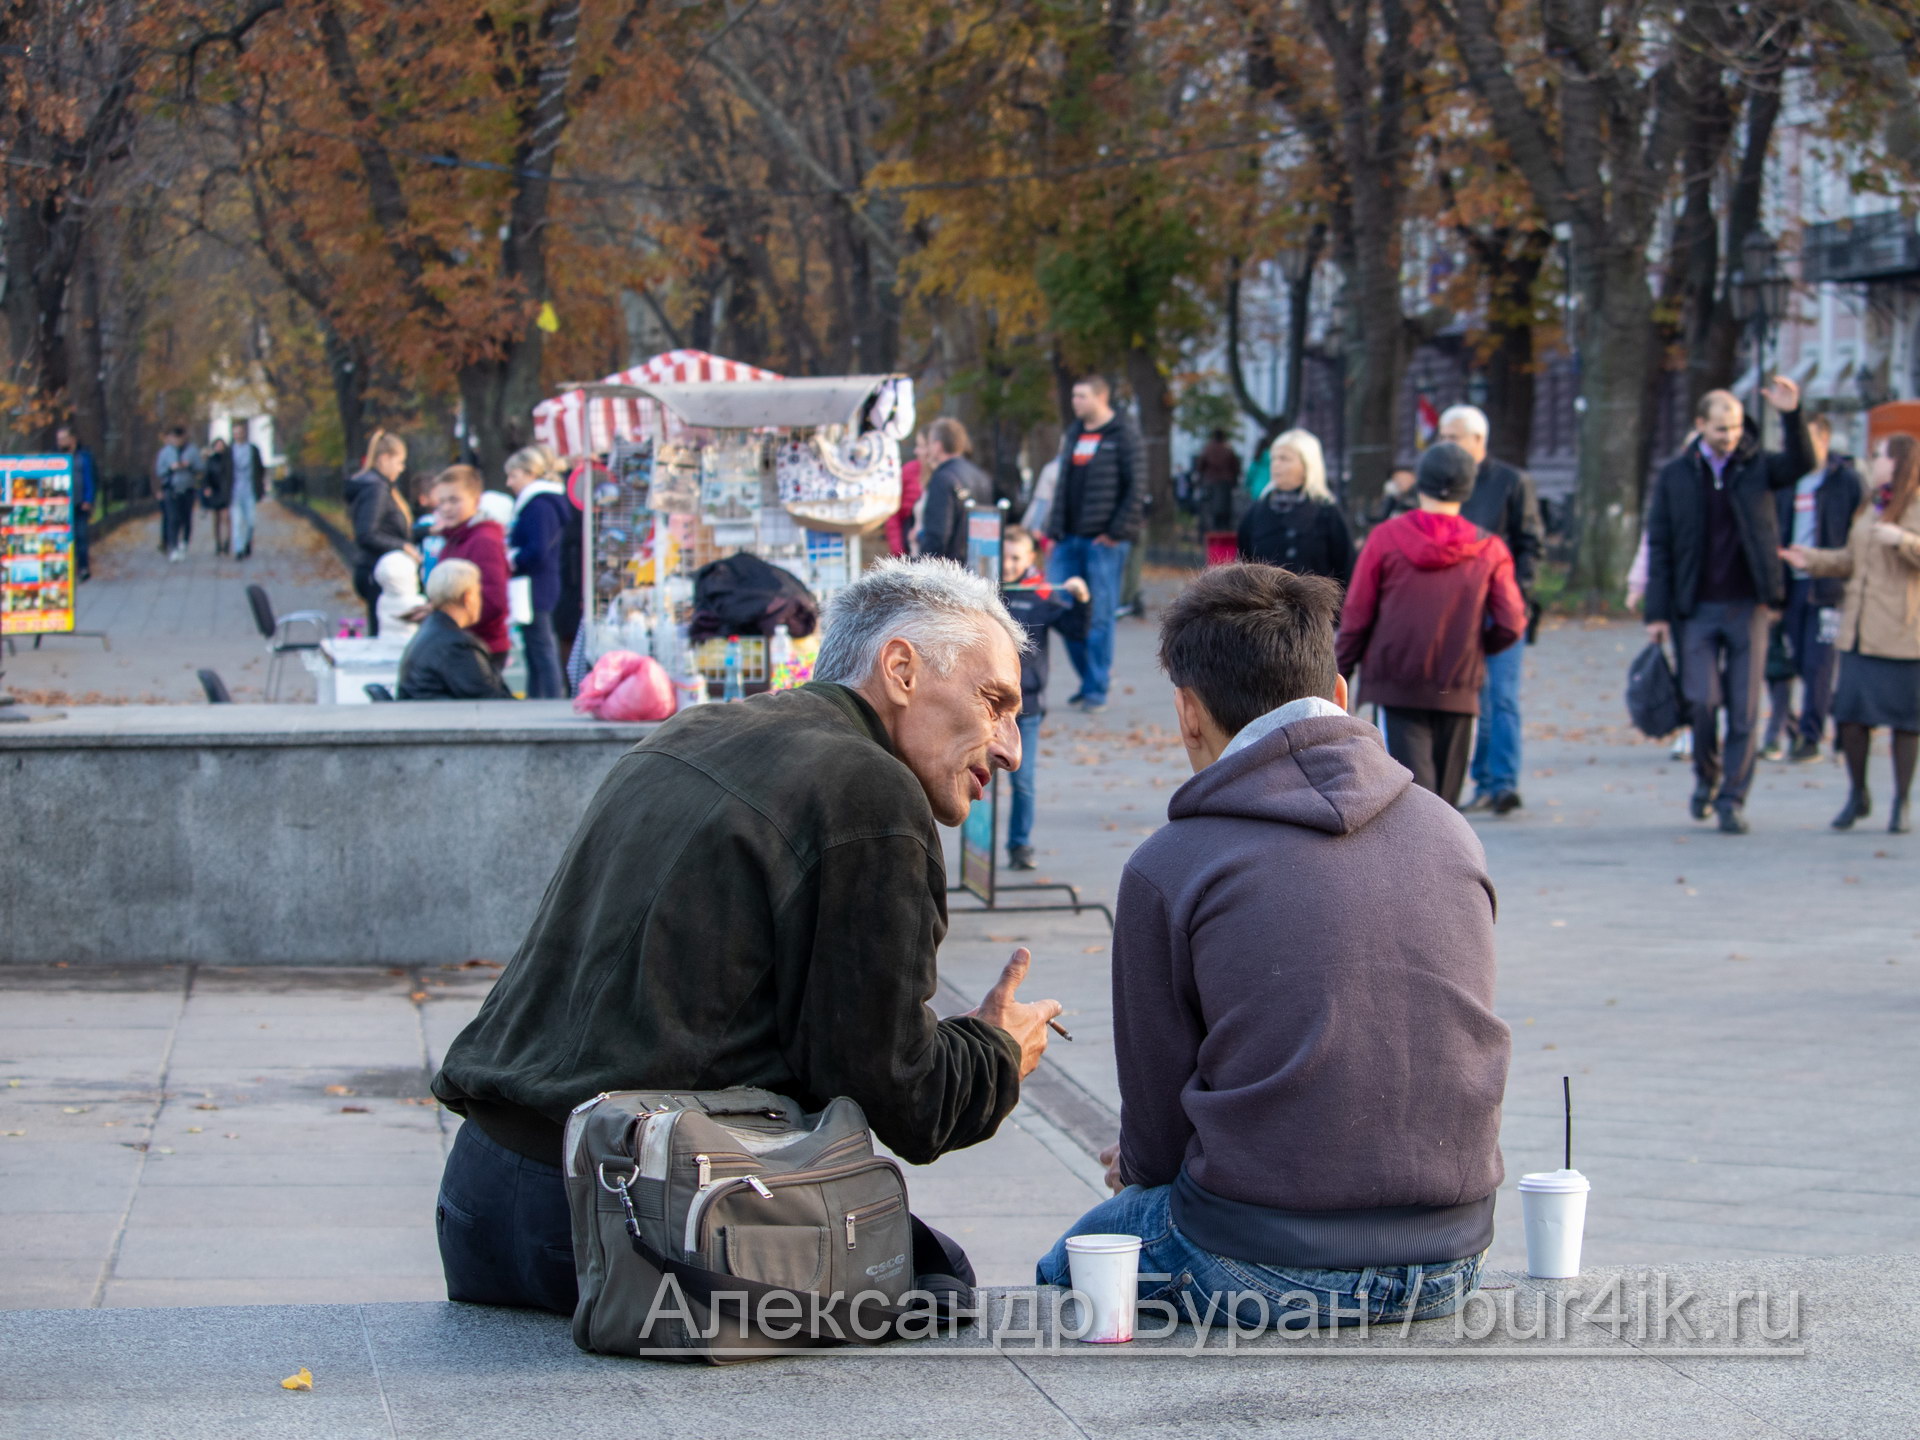 Пожилой мужчина учит жизни молодого парня, сидящего на перилах в город - Украина, Одесса, 09,11,2019